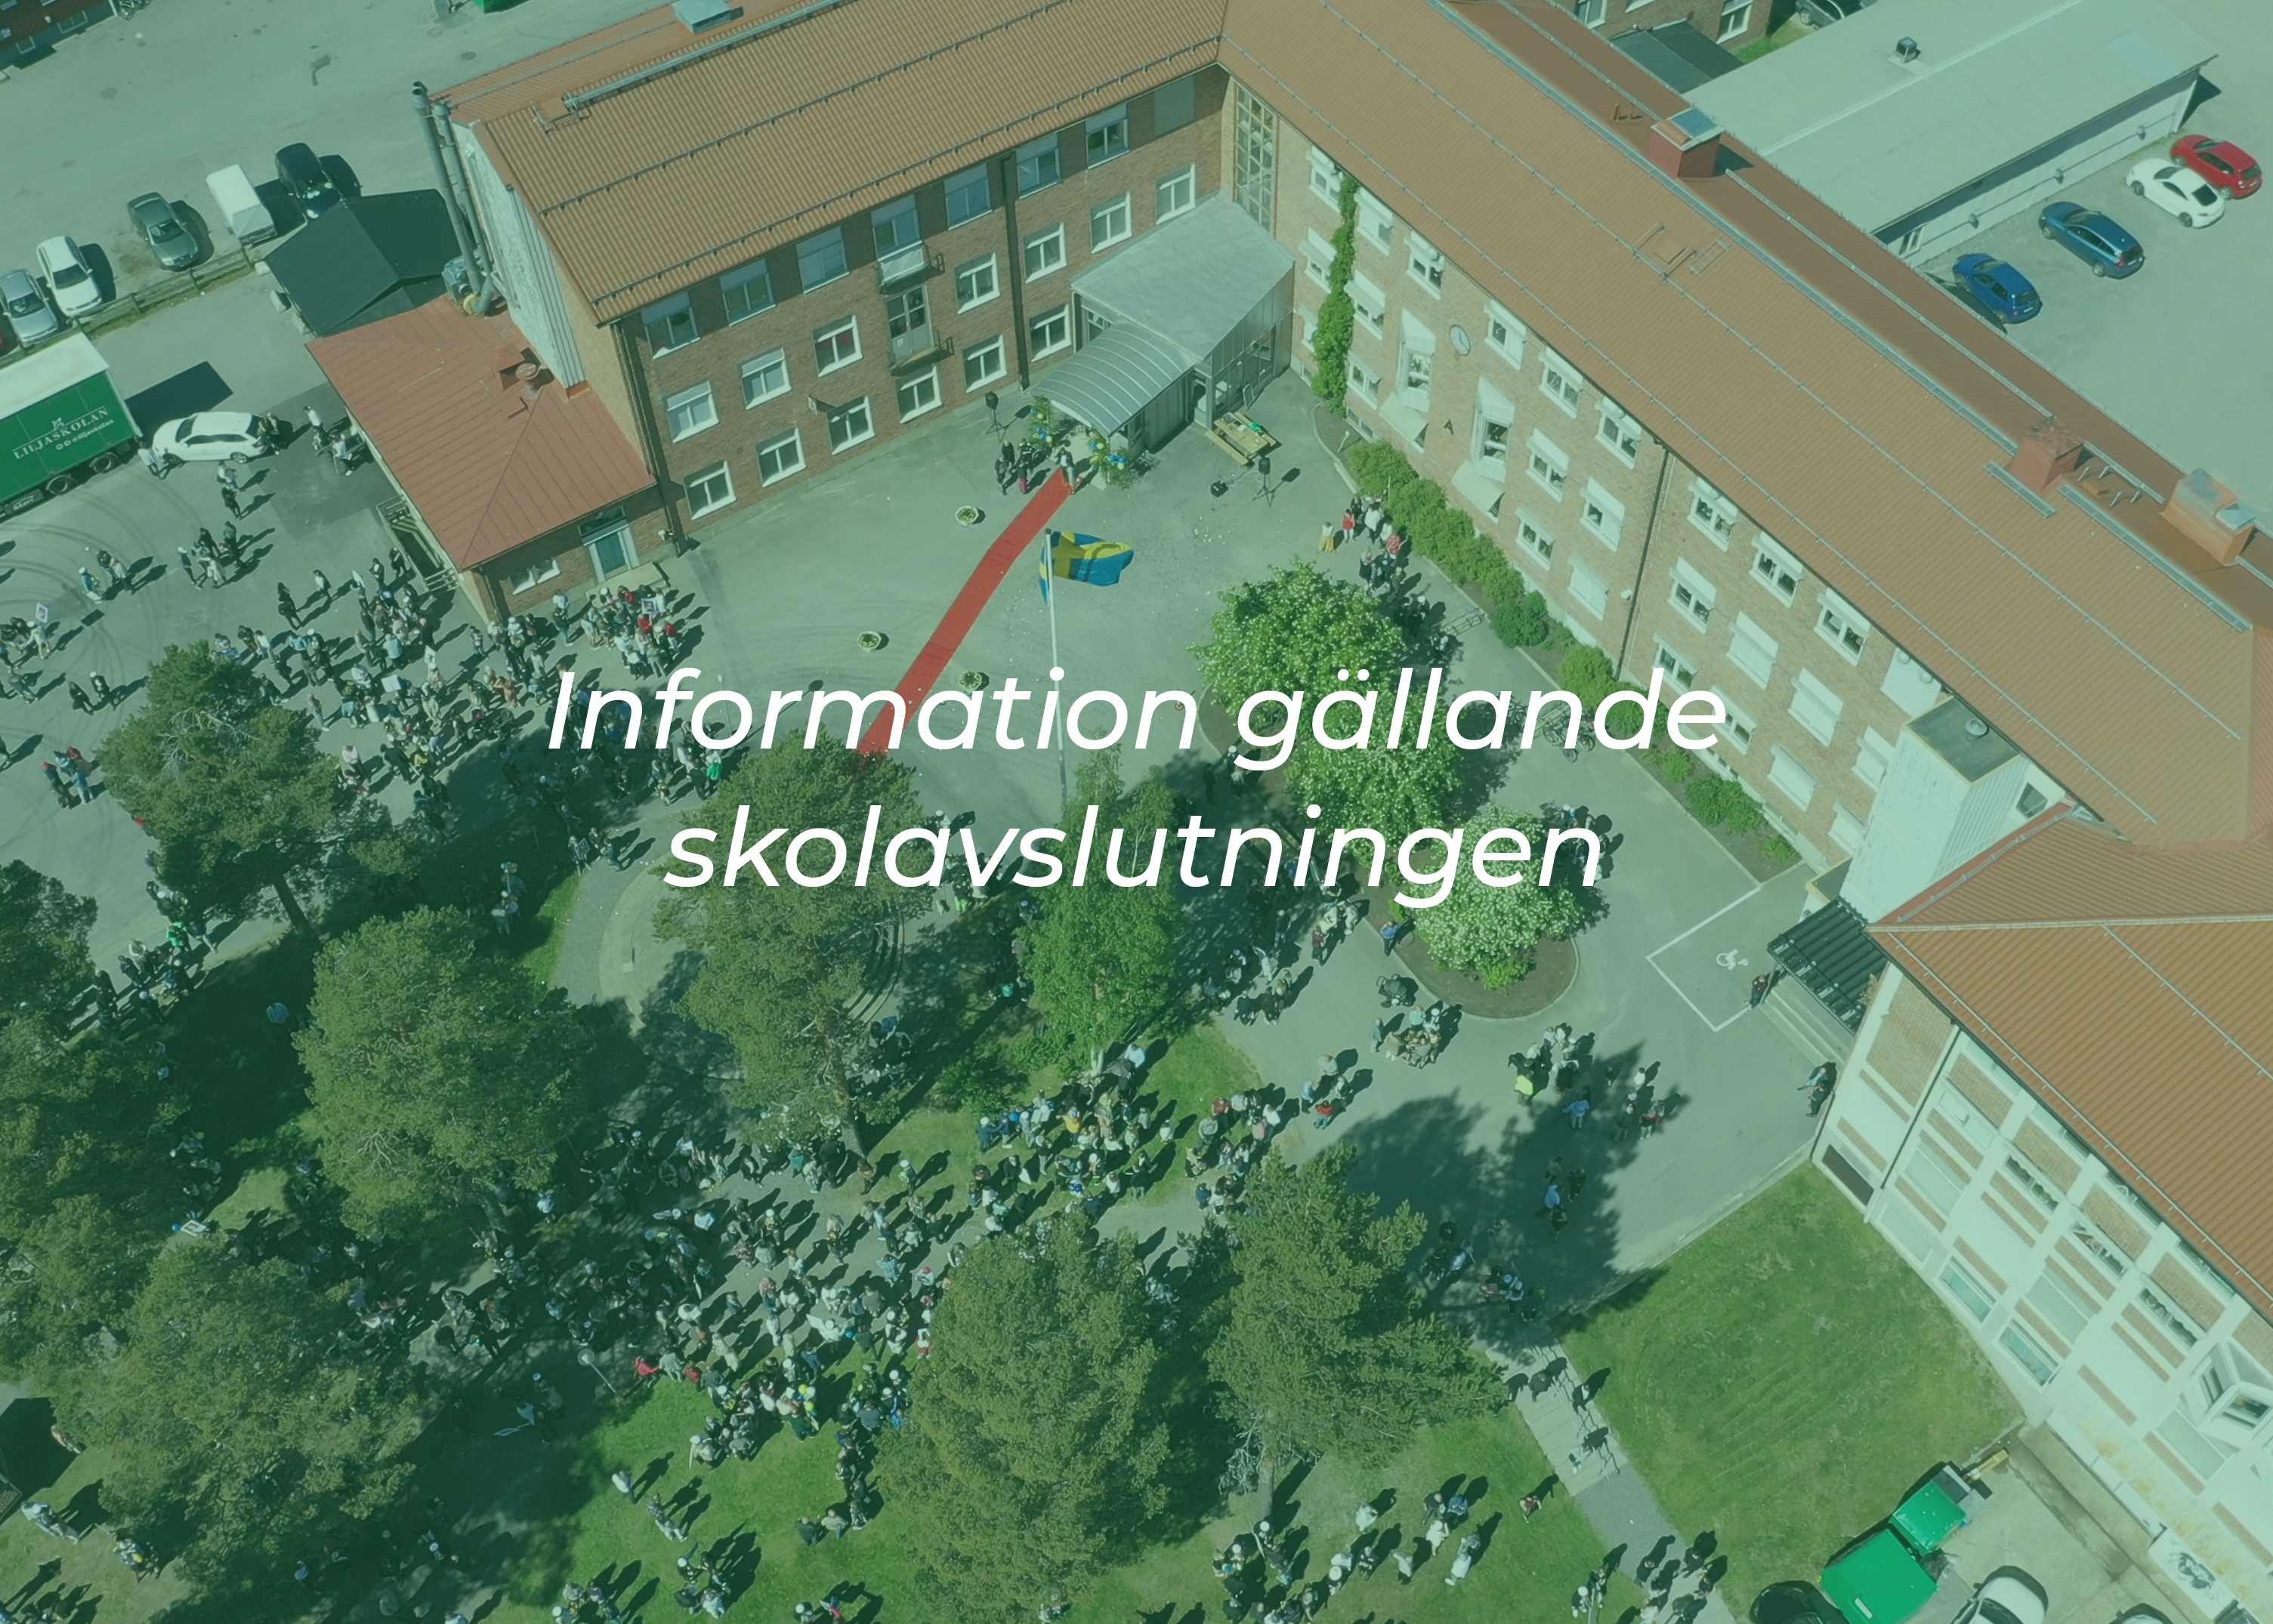 flygfoto över Liljaskolan med texten "infomration gällande skolavslutningen"